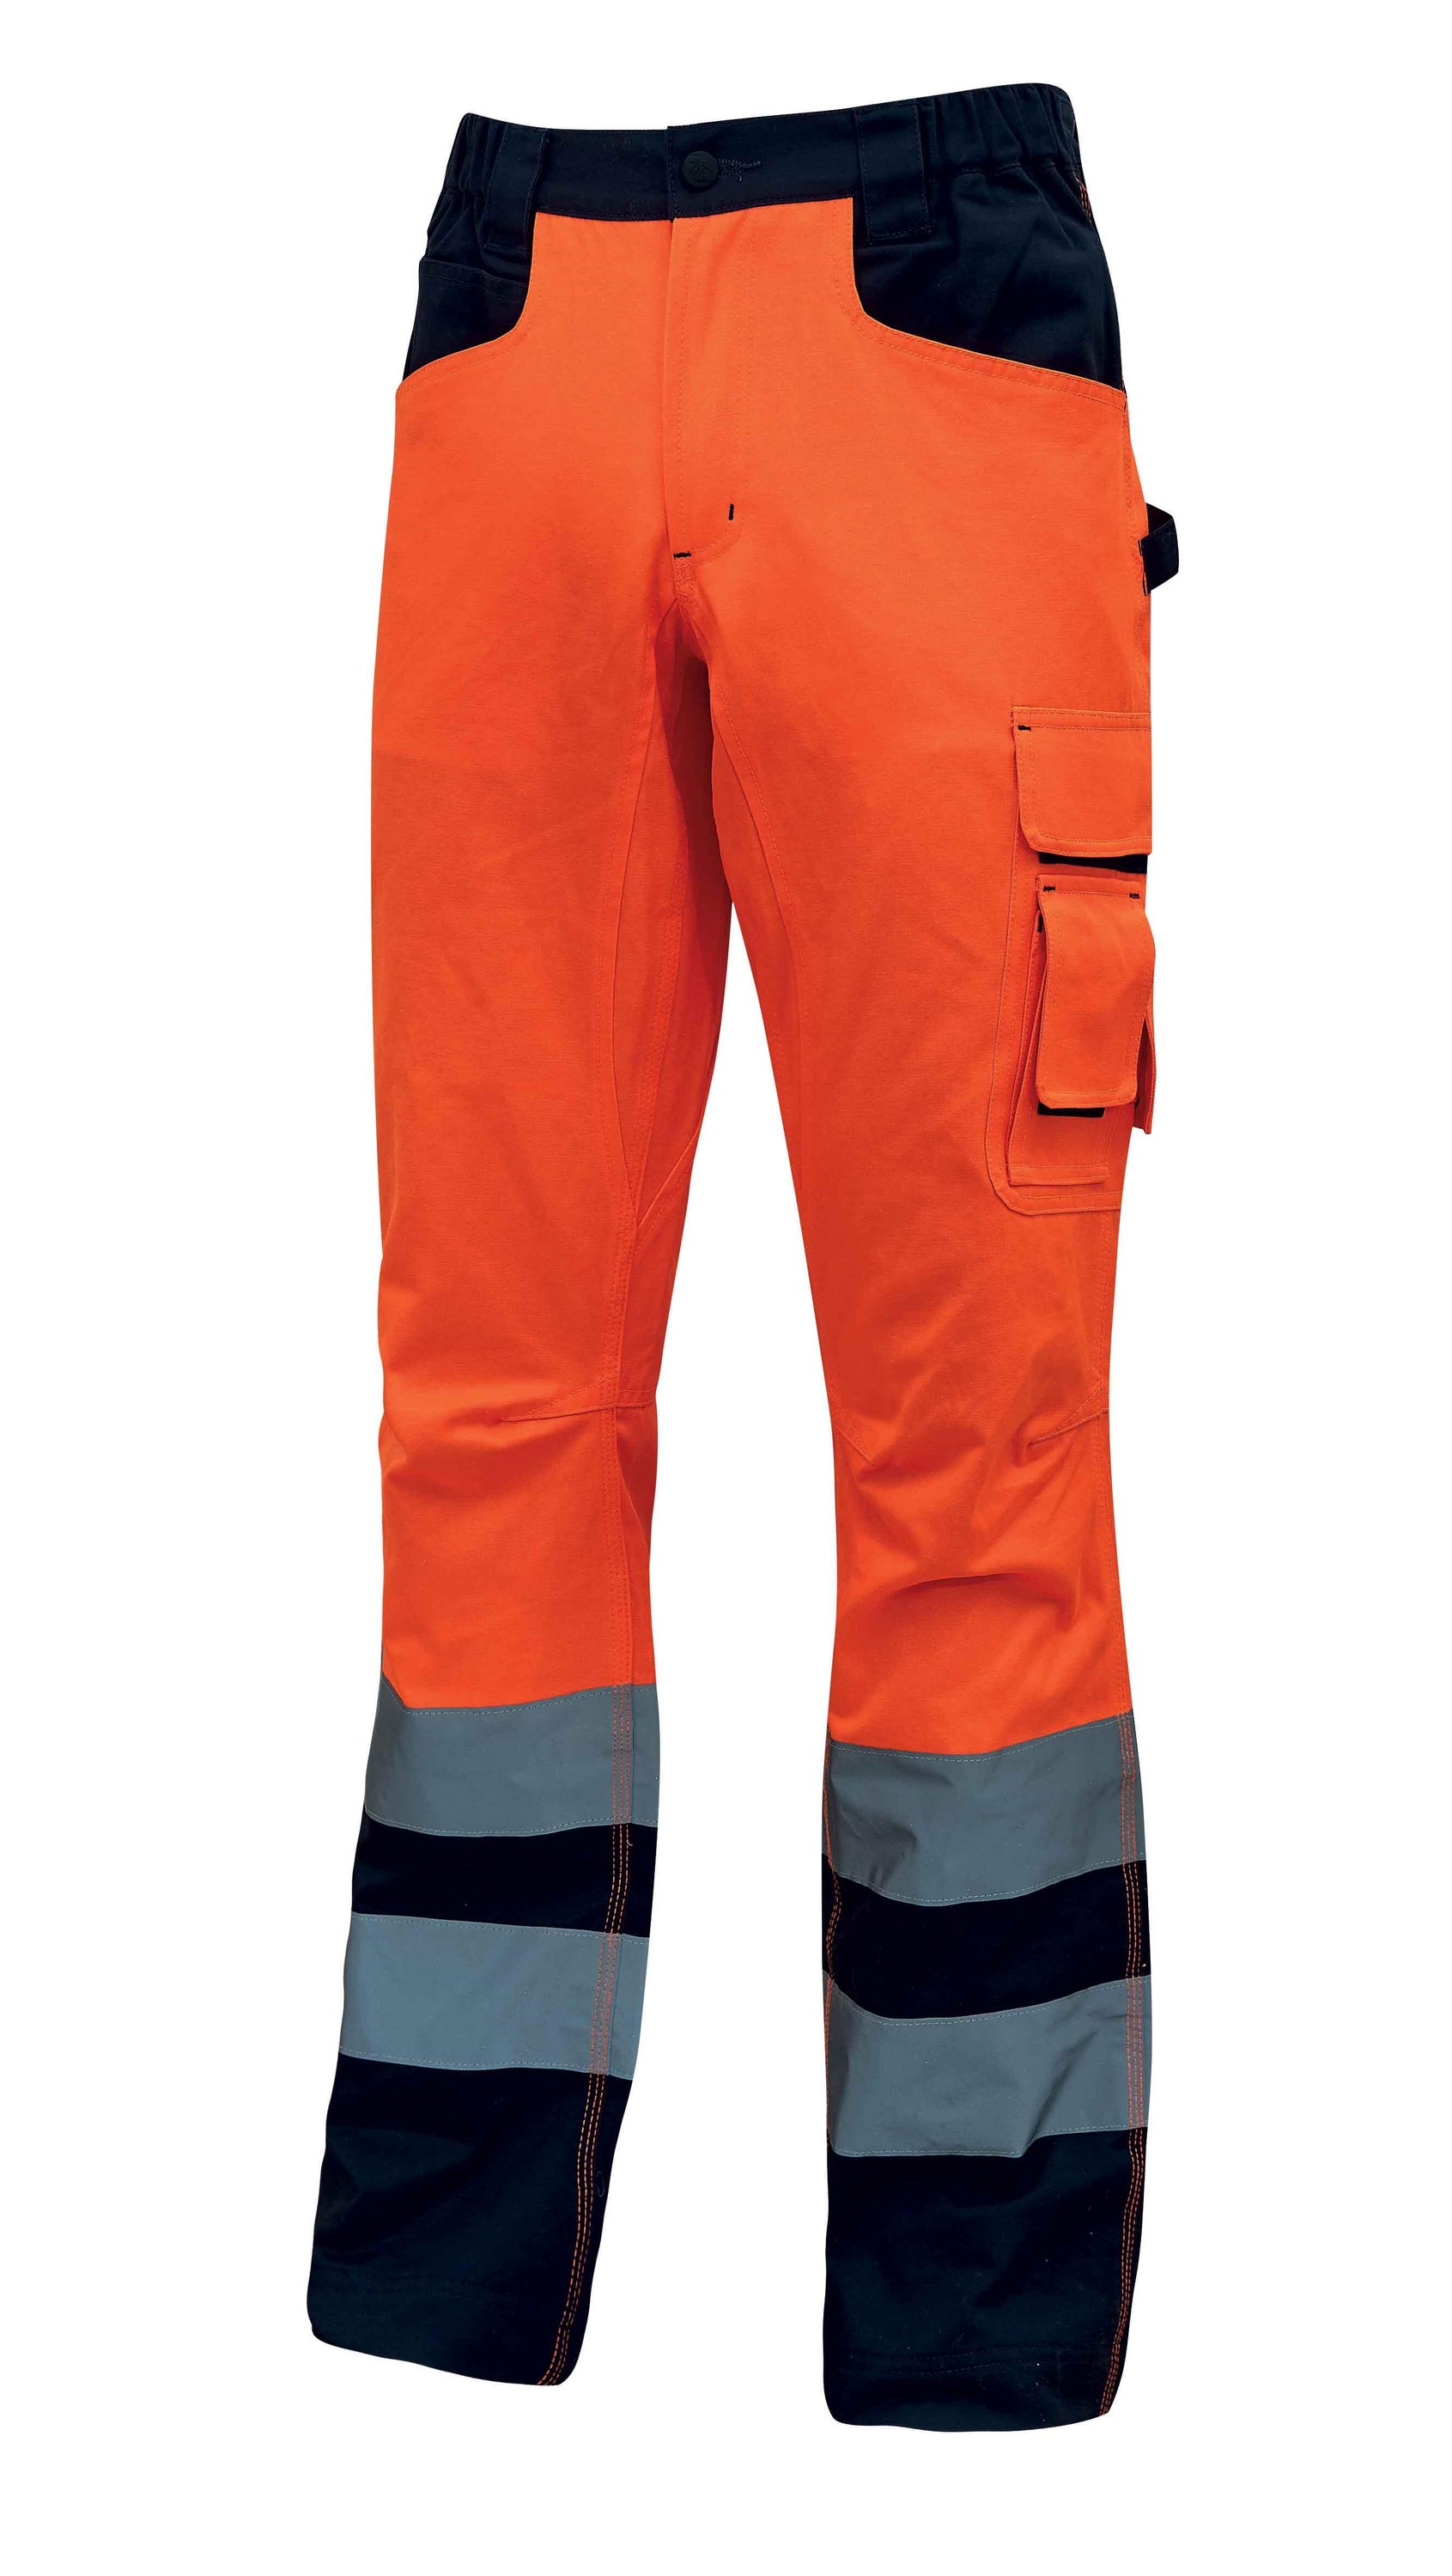 Pantalone da lavoro U-POWER Light arancione fluo tg. L